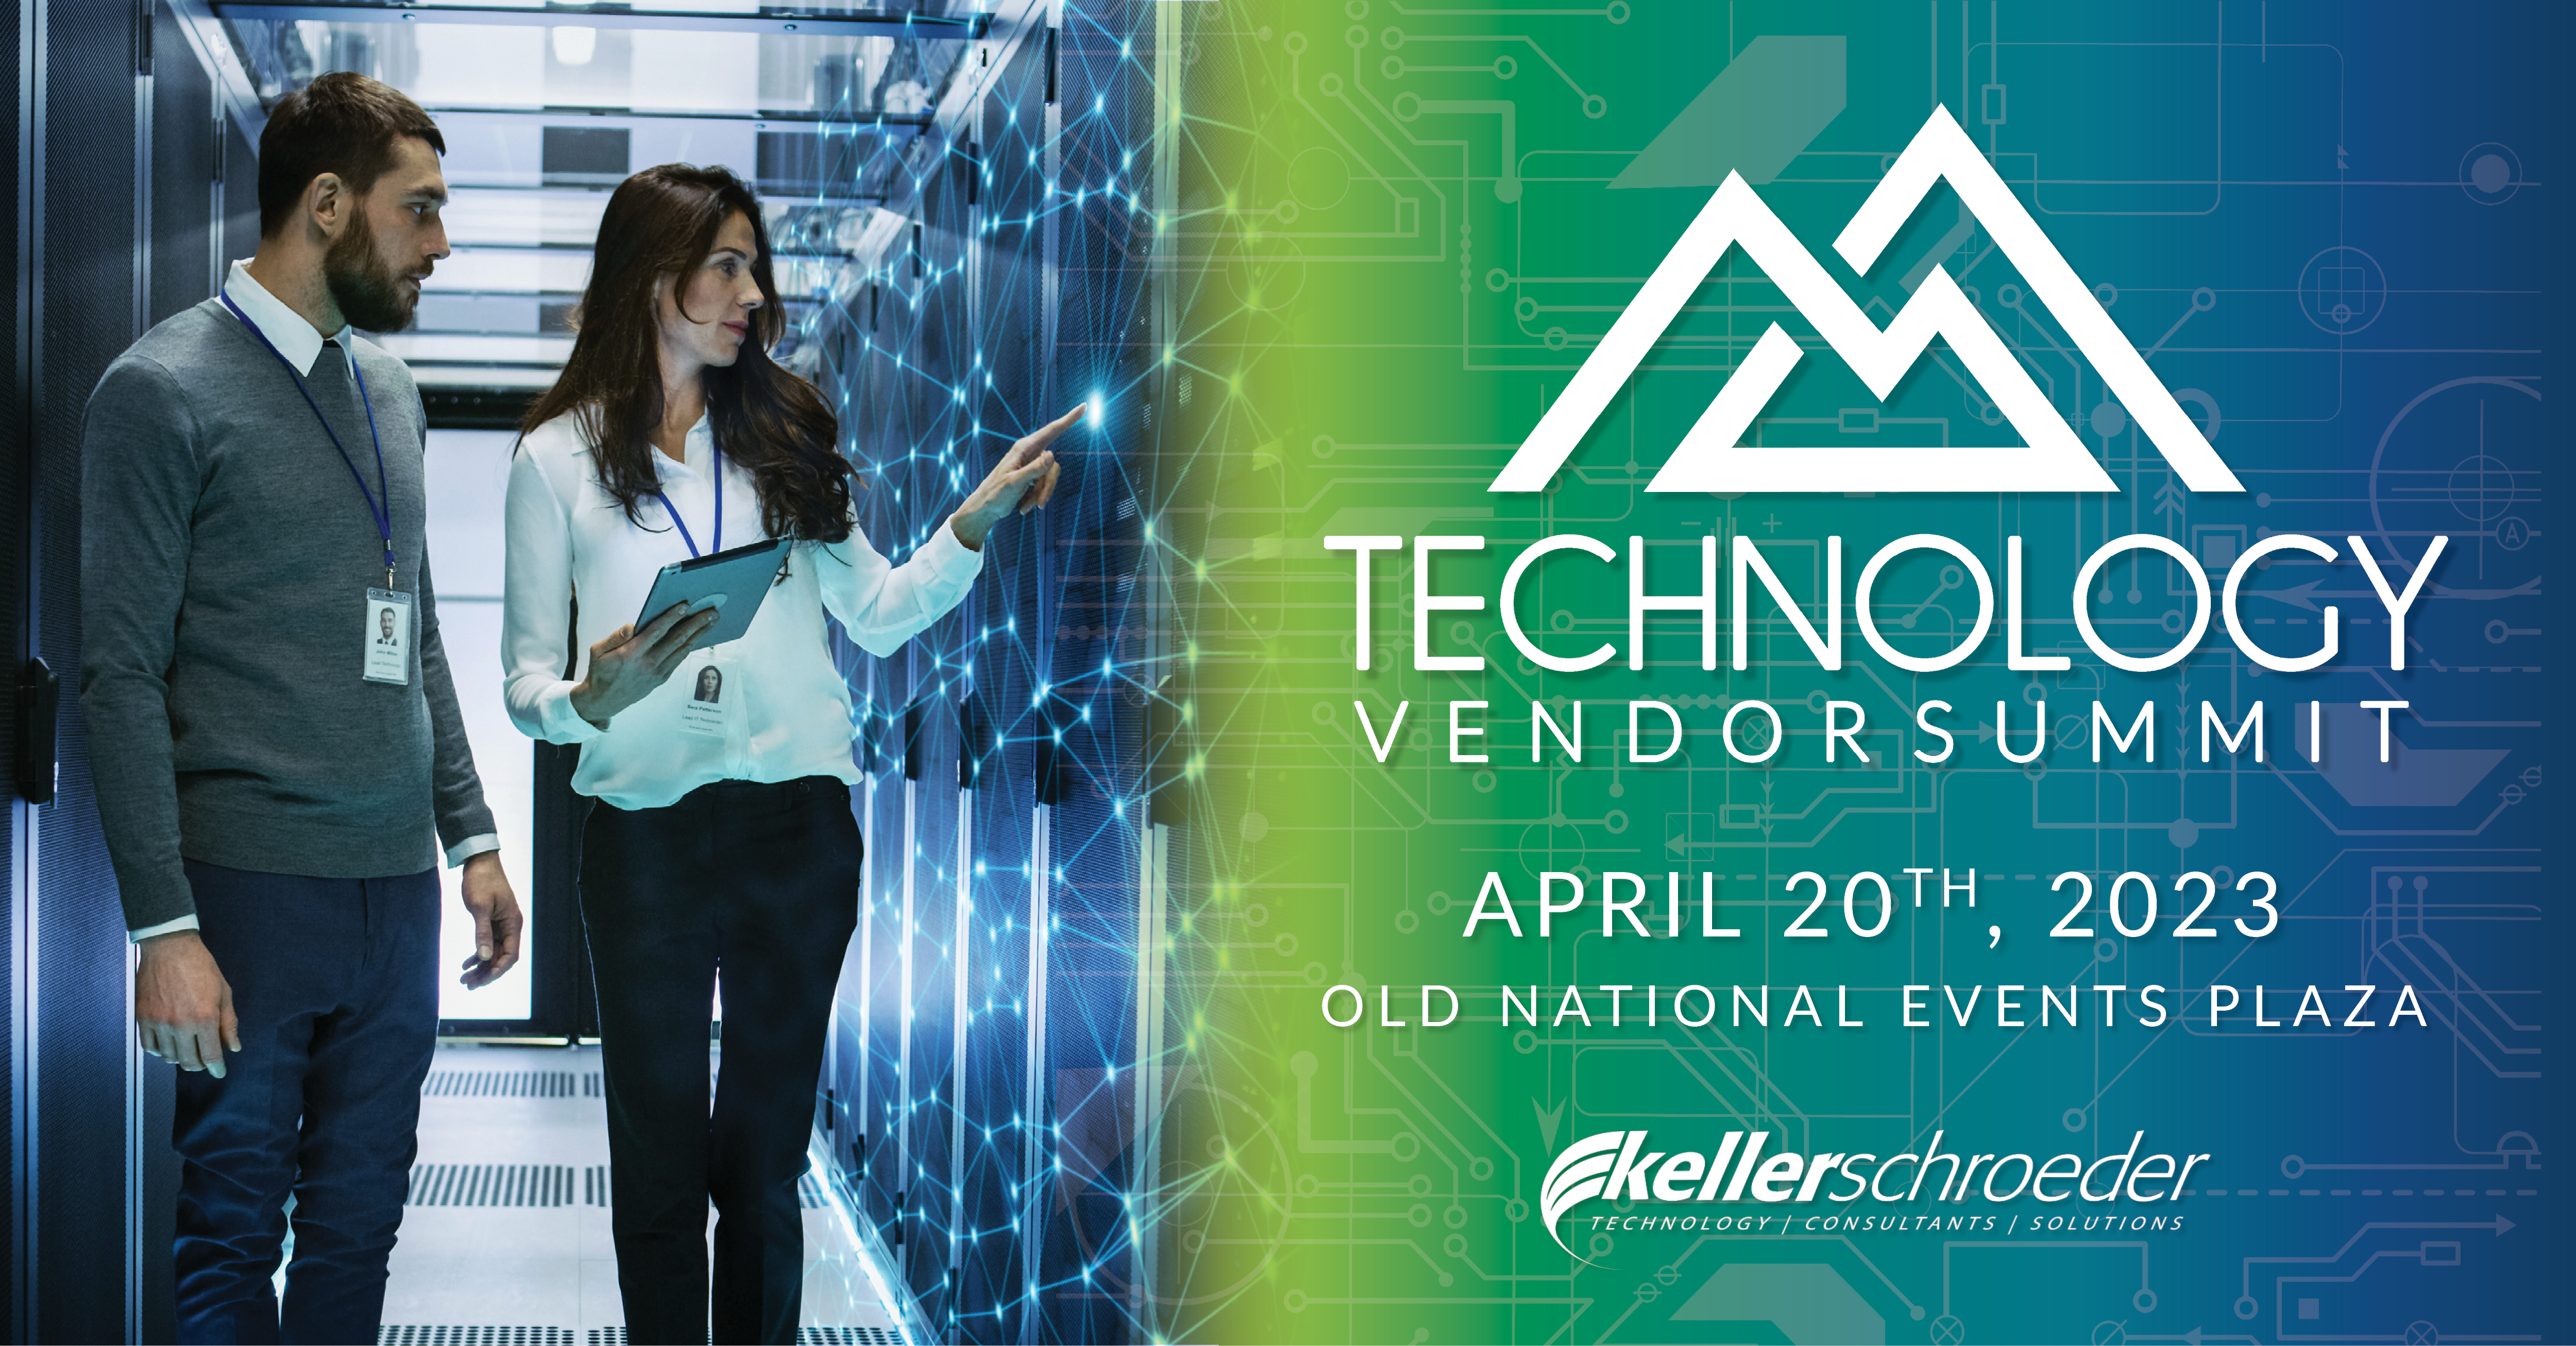 Keller Schroeder Technology Vendor Summit